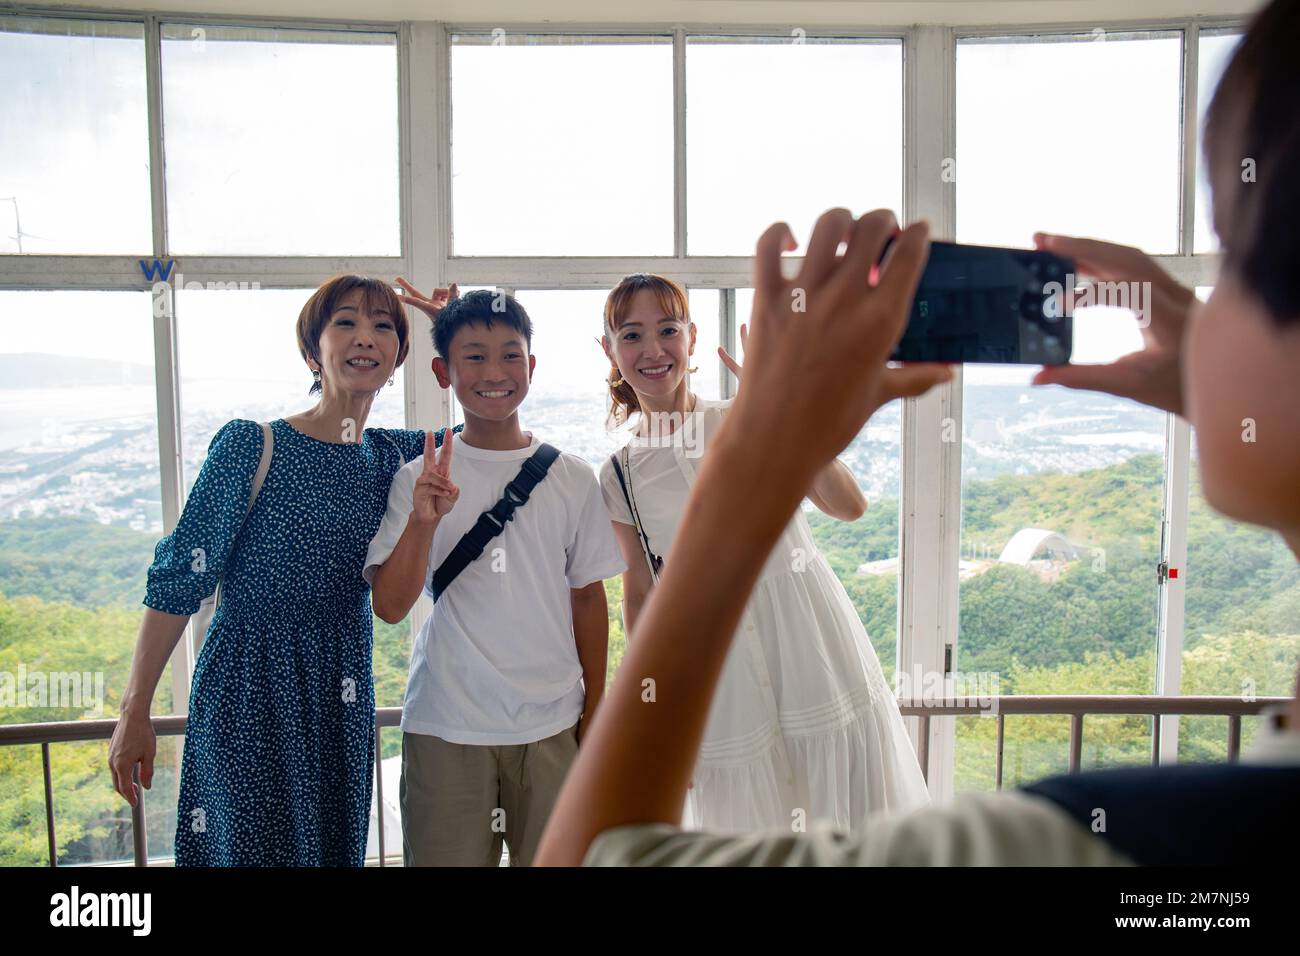 Un niño usando su teléfono móvil para tomar una foto de tres personas, un niño de 13 años, su madre y un amigo. Foto de stock